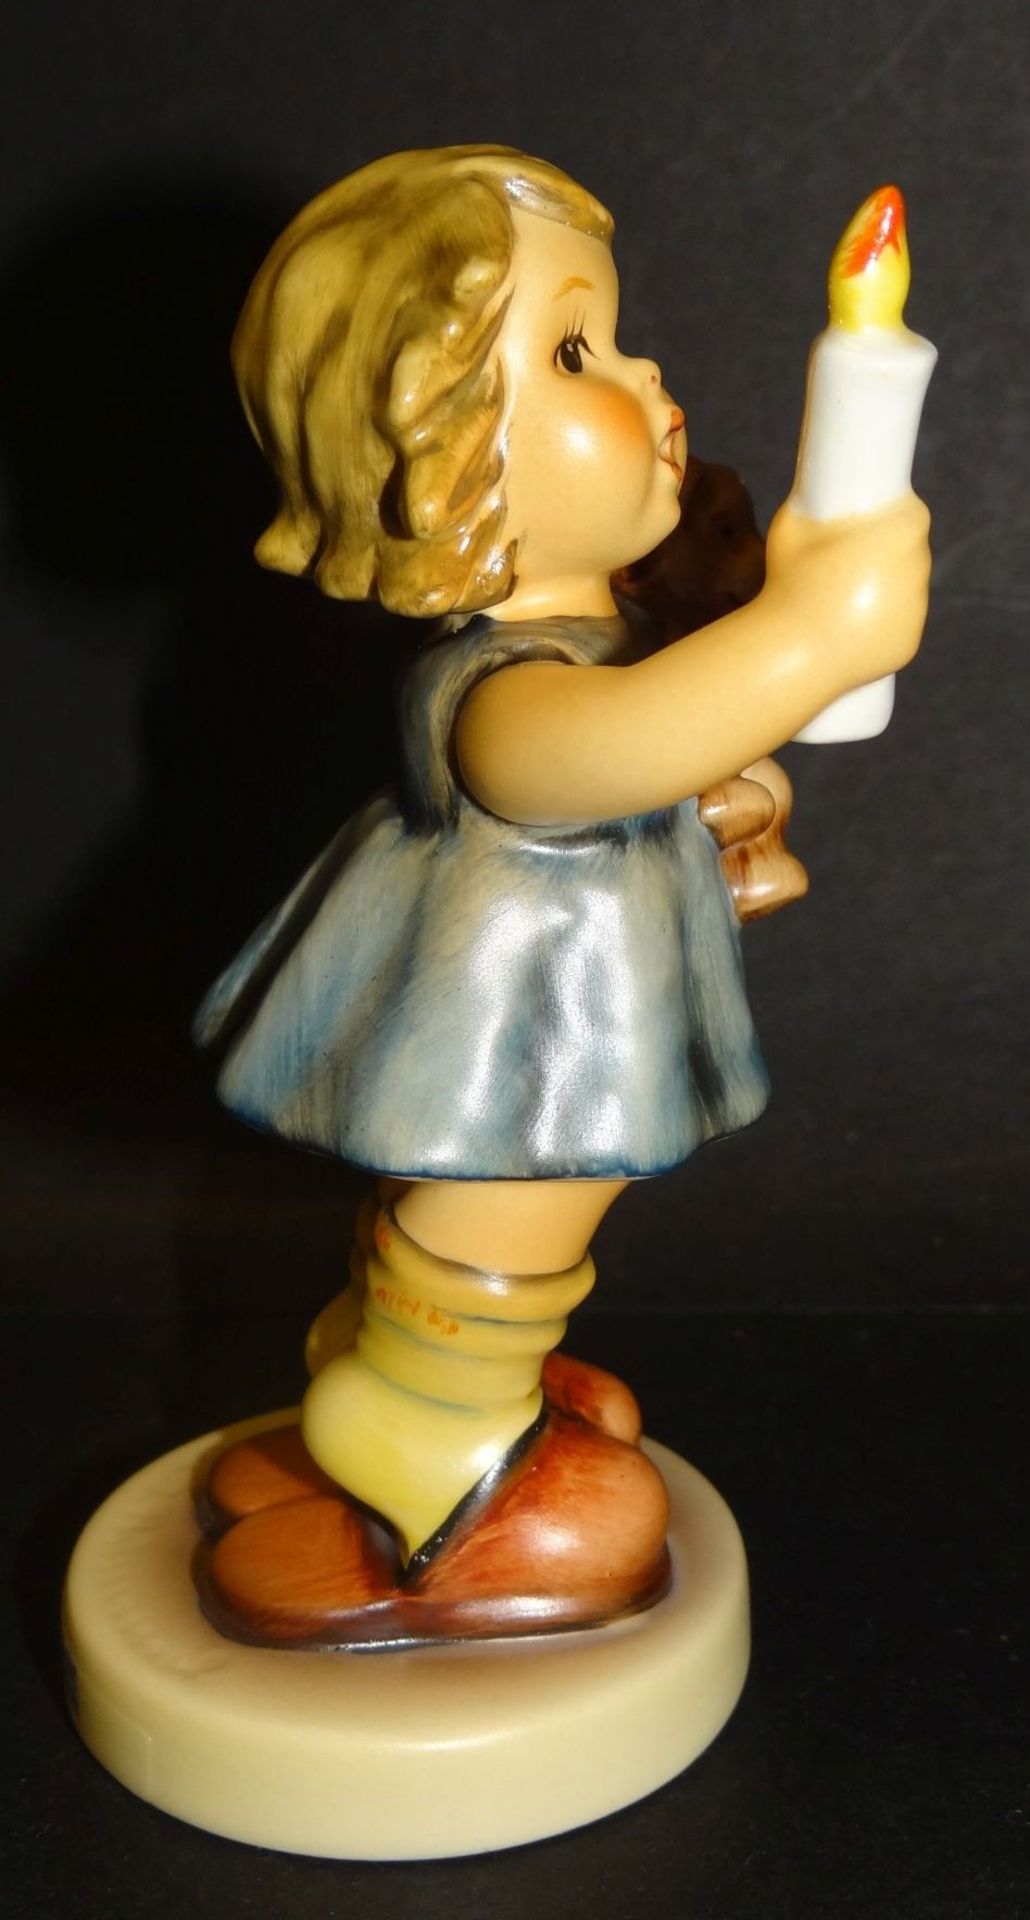 Hummel-Figur "Ich mach Licht" in orig. Karton, bemalt, H-11 cm, gut erhalten - Bild 5 aus 8